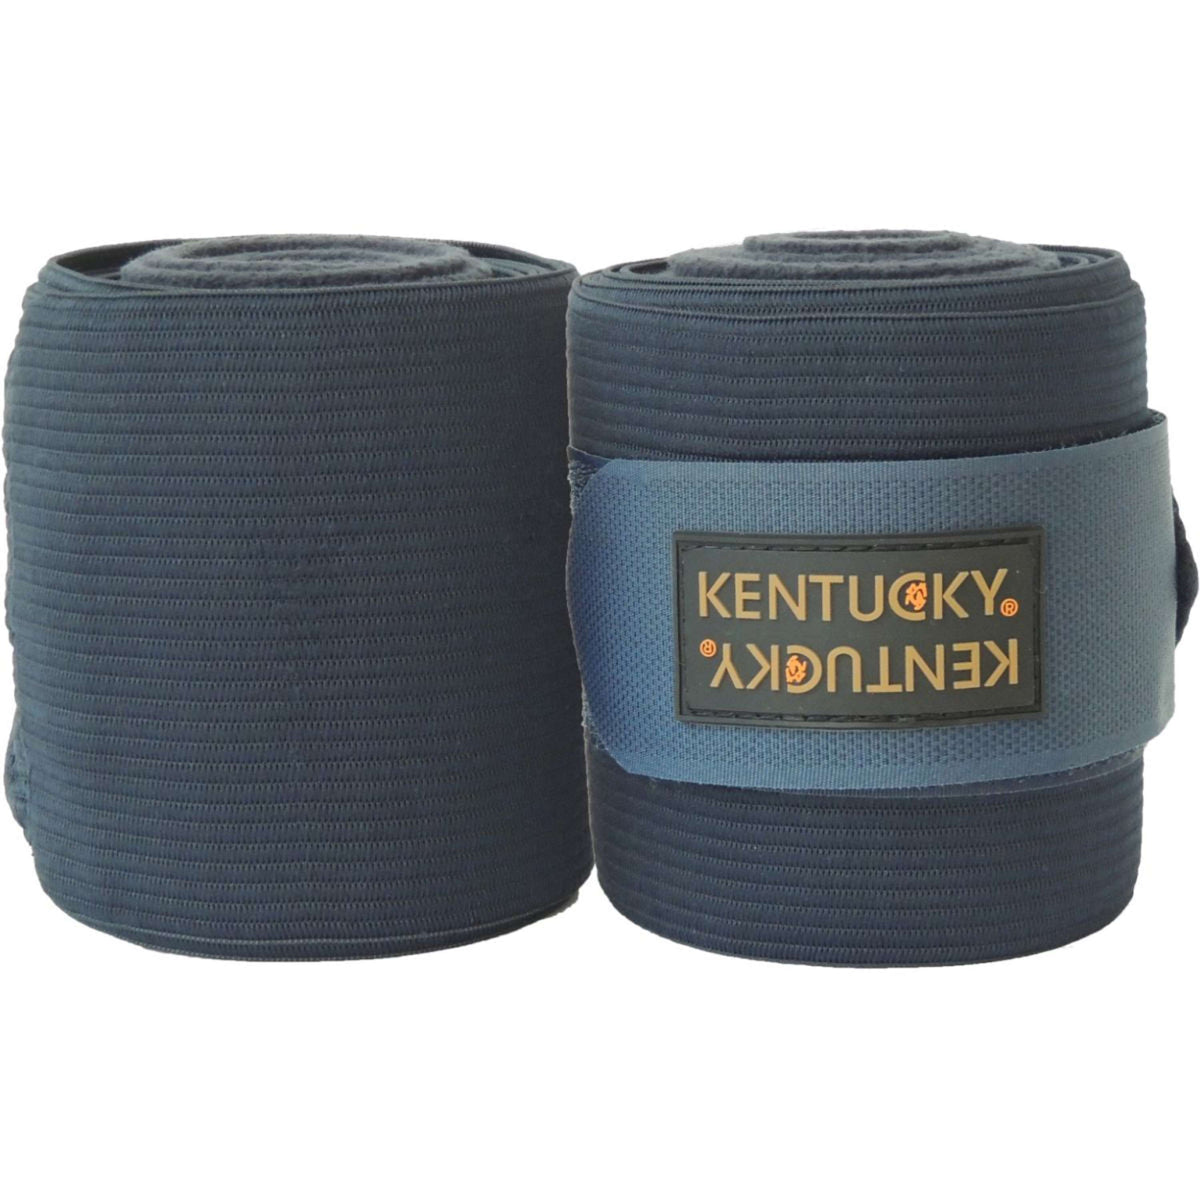 Kentucky Horsewear Bandagen Elastisches Polarfleece Navy